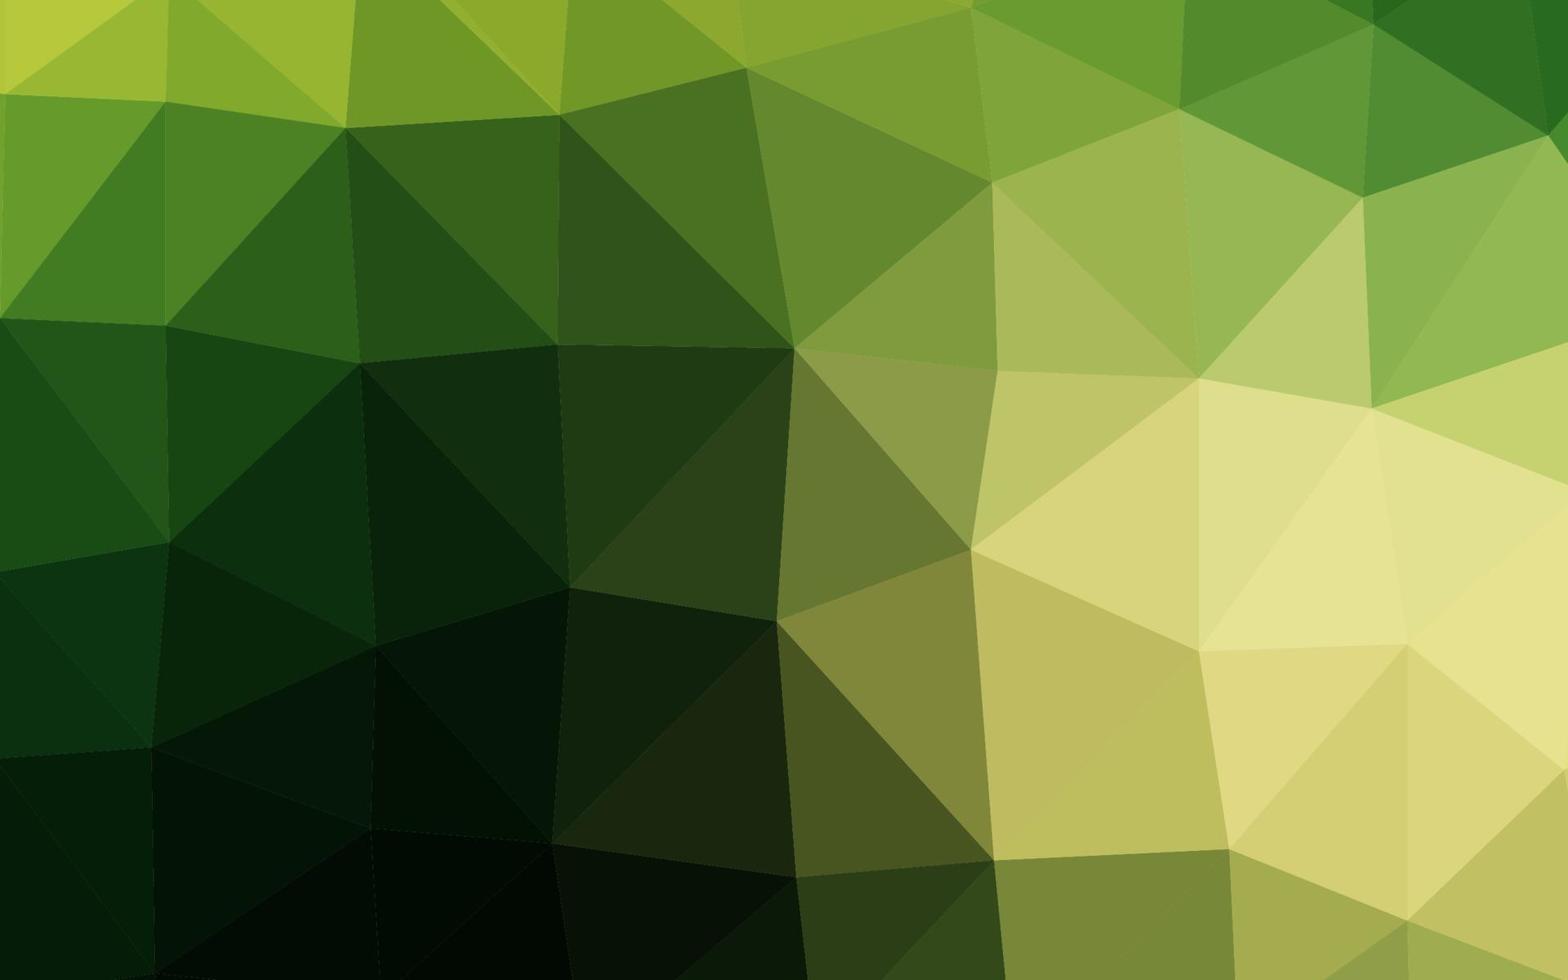 Plantilla de triángulo borroso vector verde oscuro, amarillo.